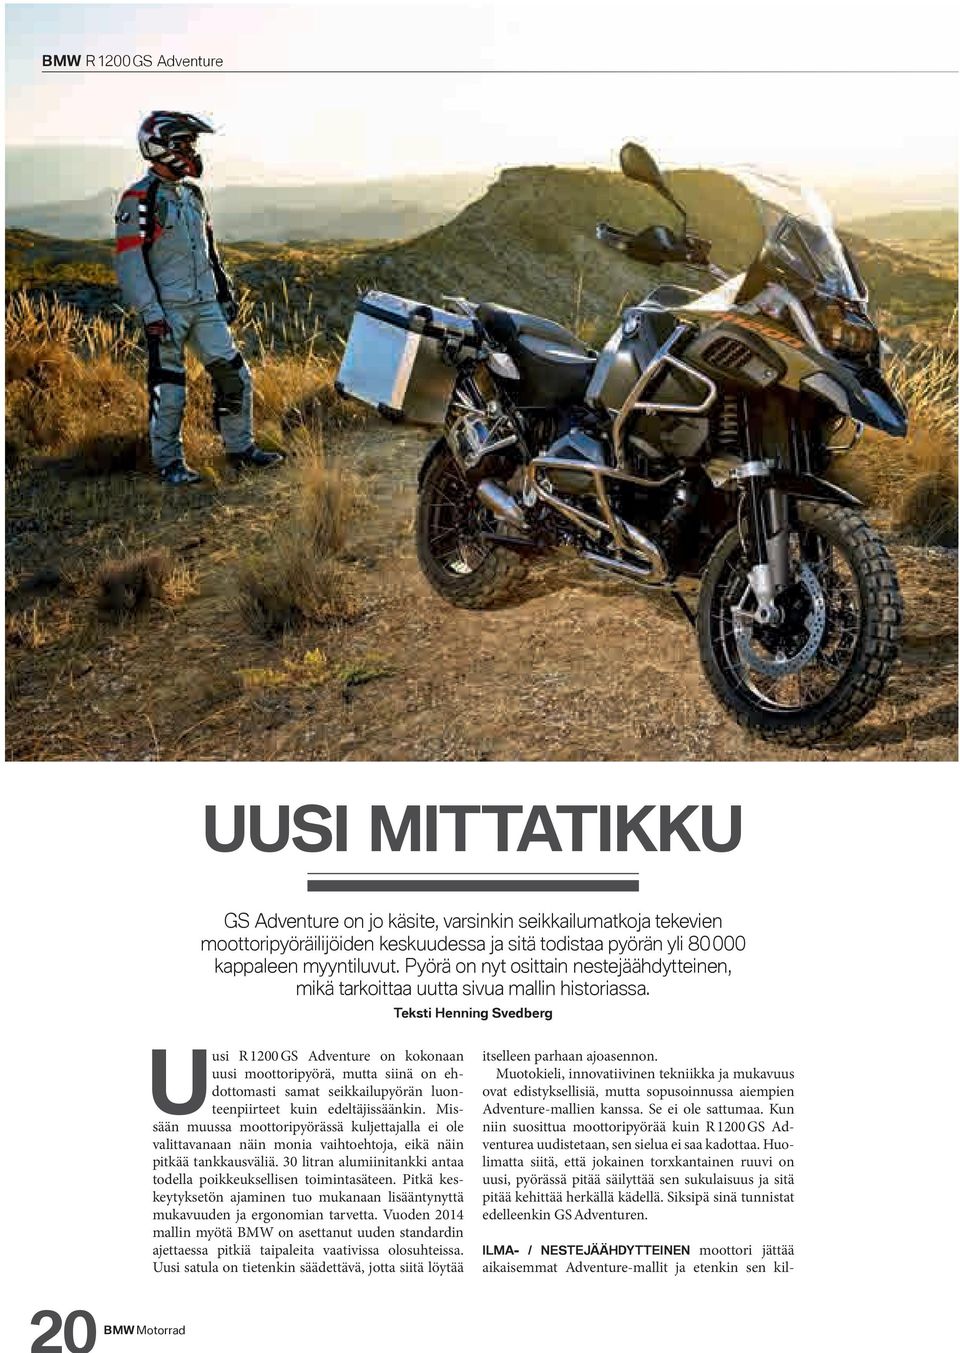 Teksti Henning Svedberg Uusi R 1200 GS Adventure on kokonaan uusi moottoripyörä, mutta siinä on ehdottomasti samat seikkailupyörän luonteenpiirteet kuin edeltäjissäänkin.